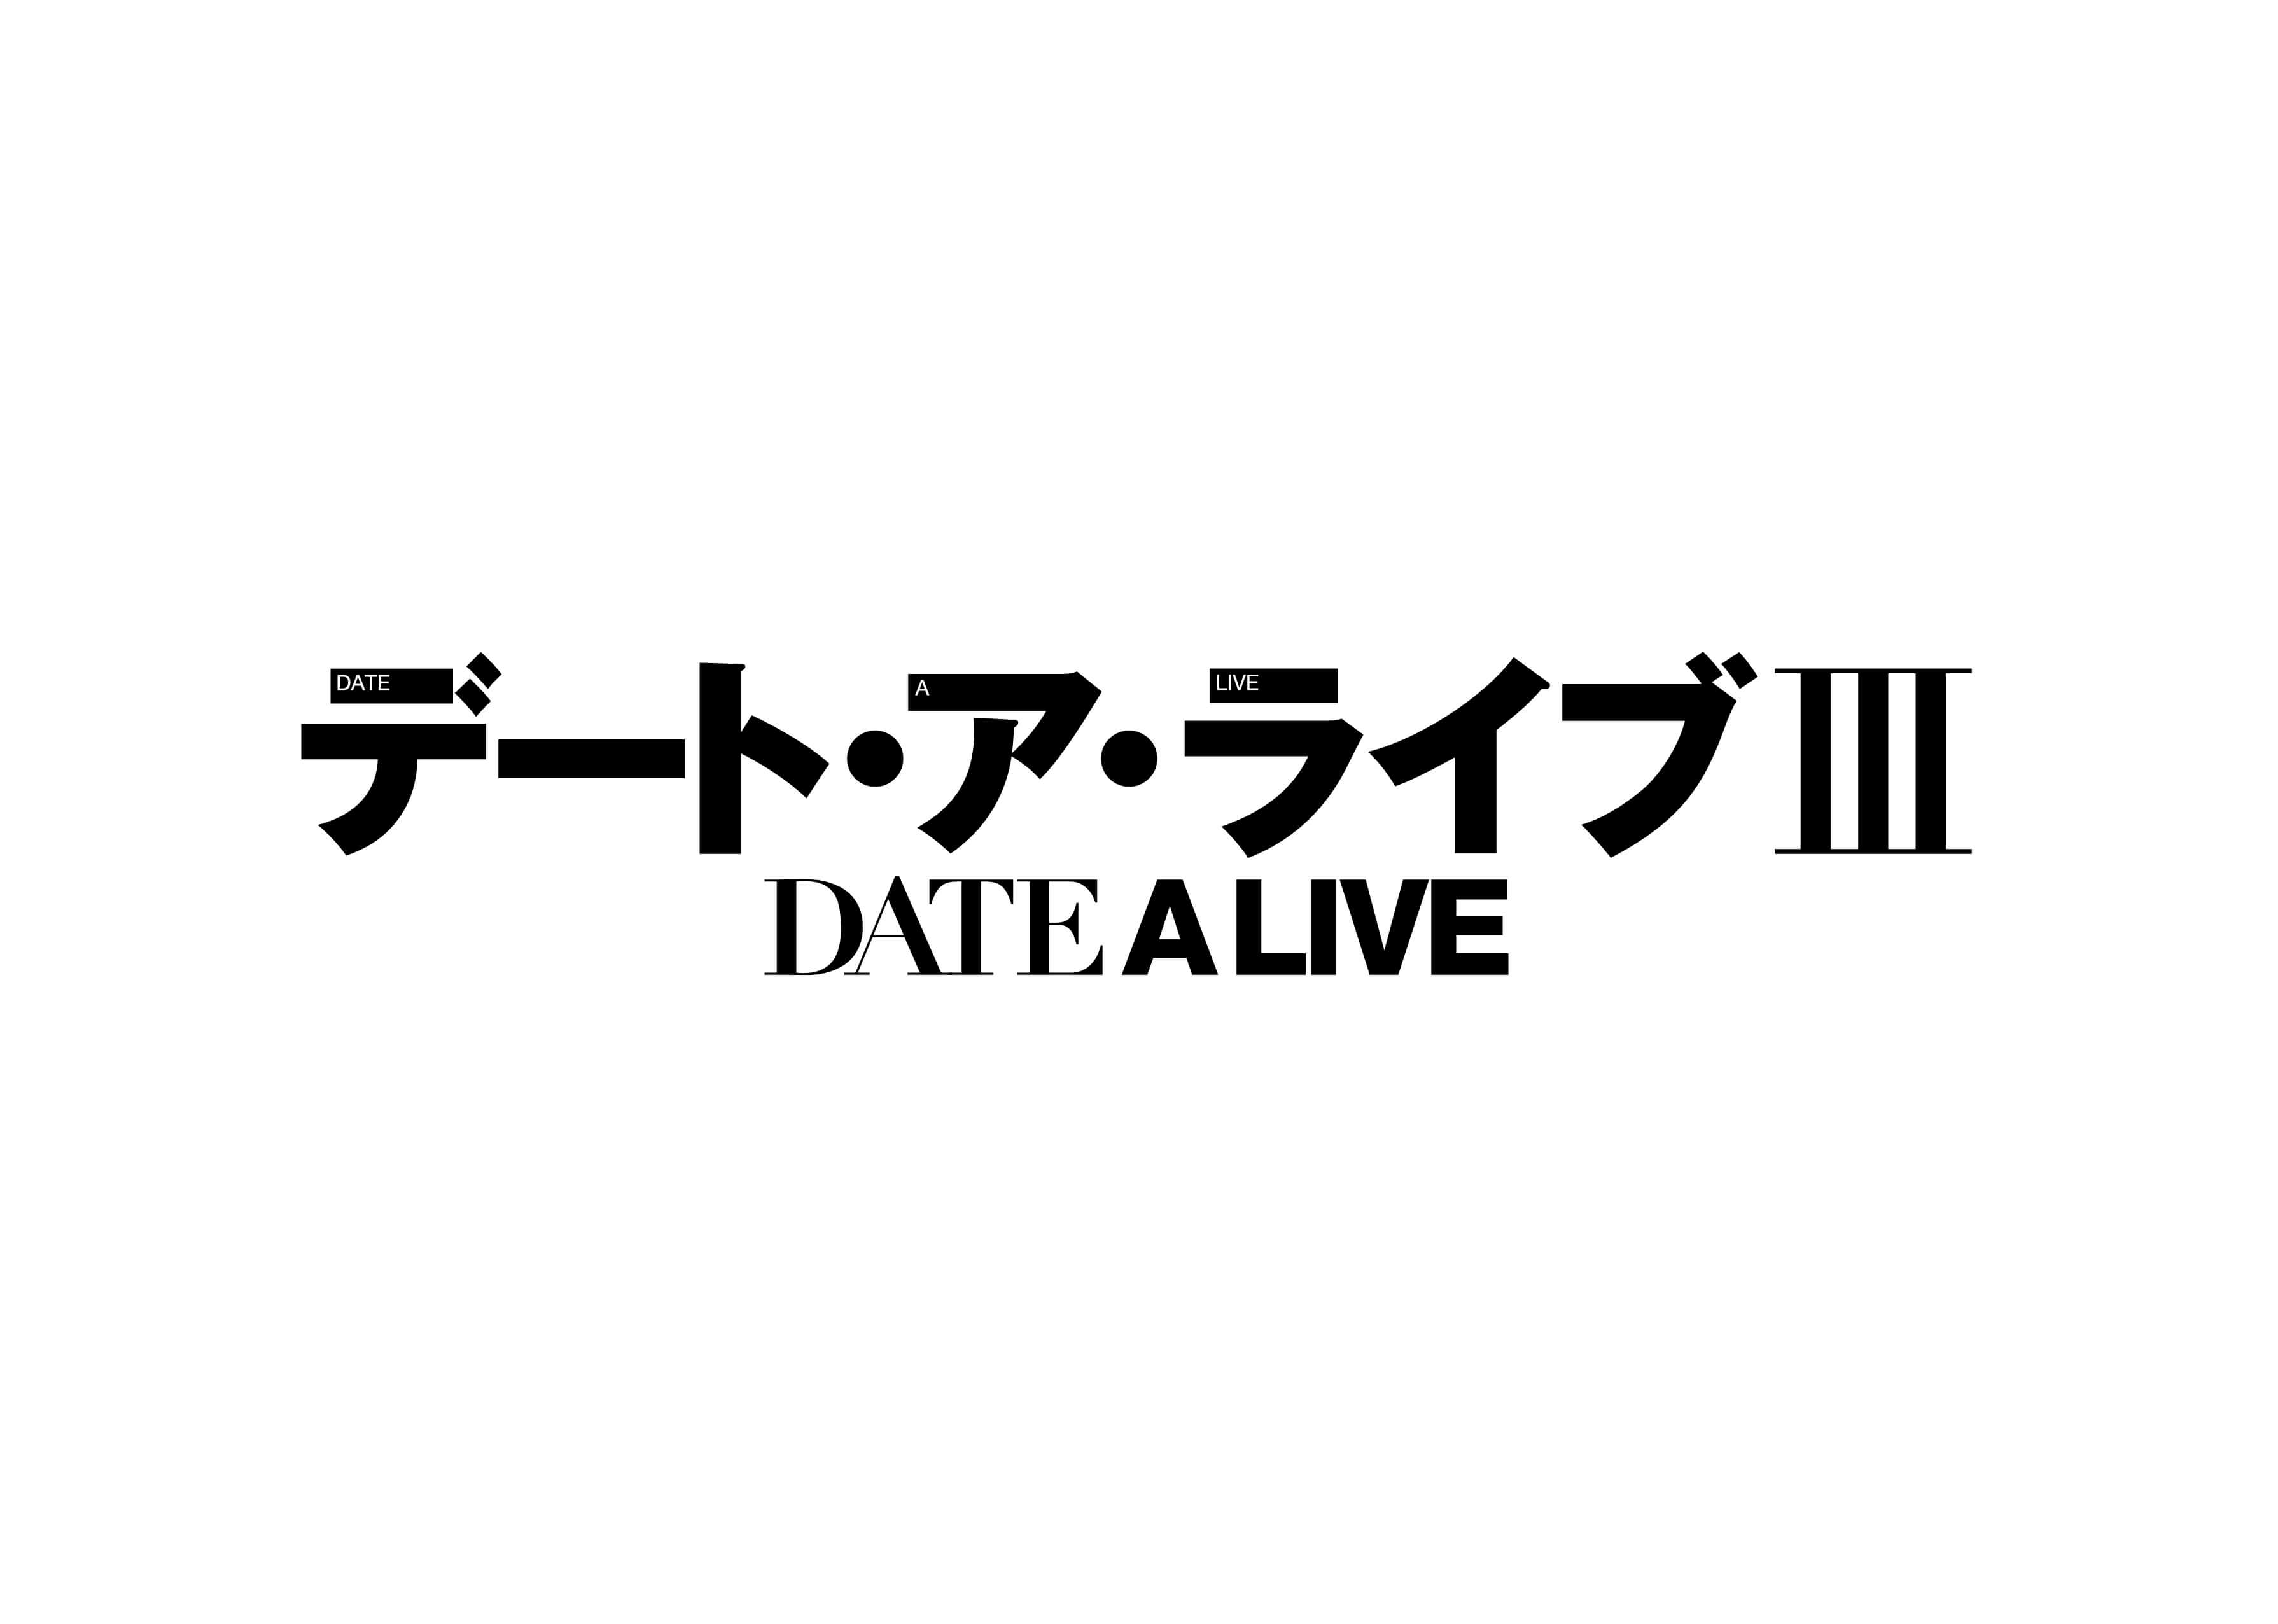 デート・ア・ライブ　date a livedal3_logo